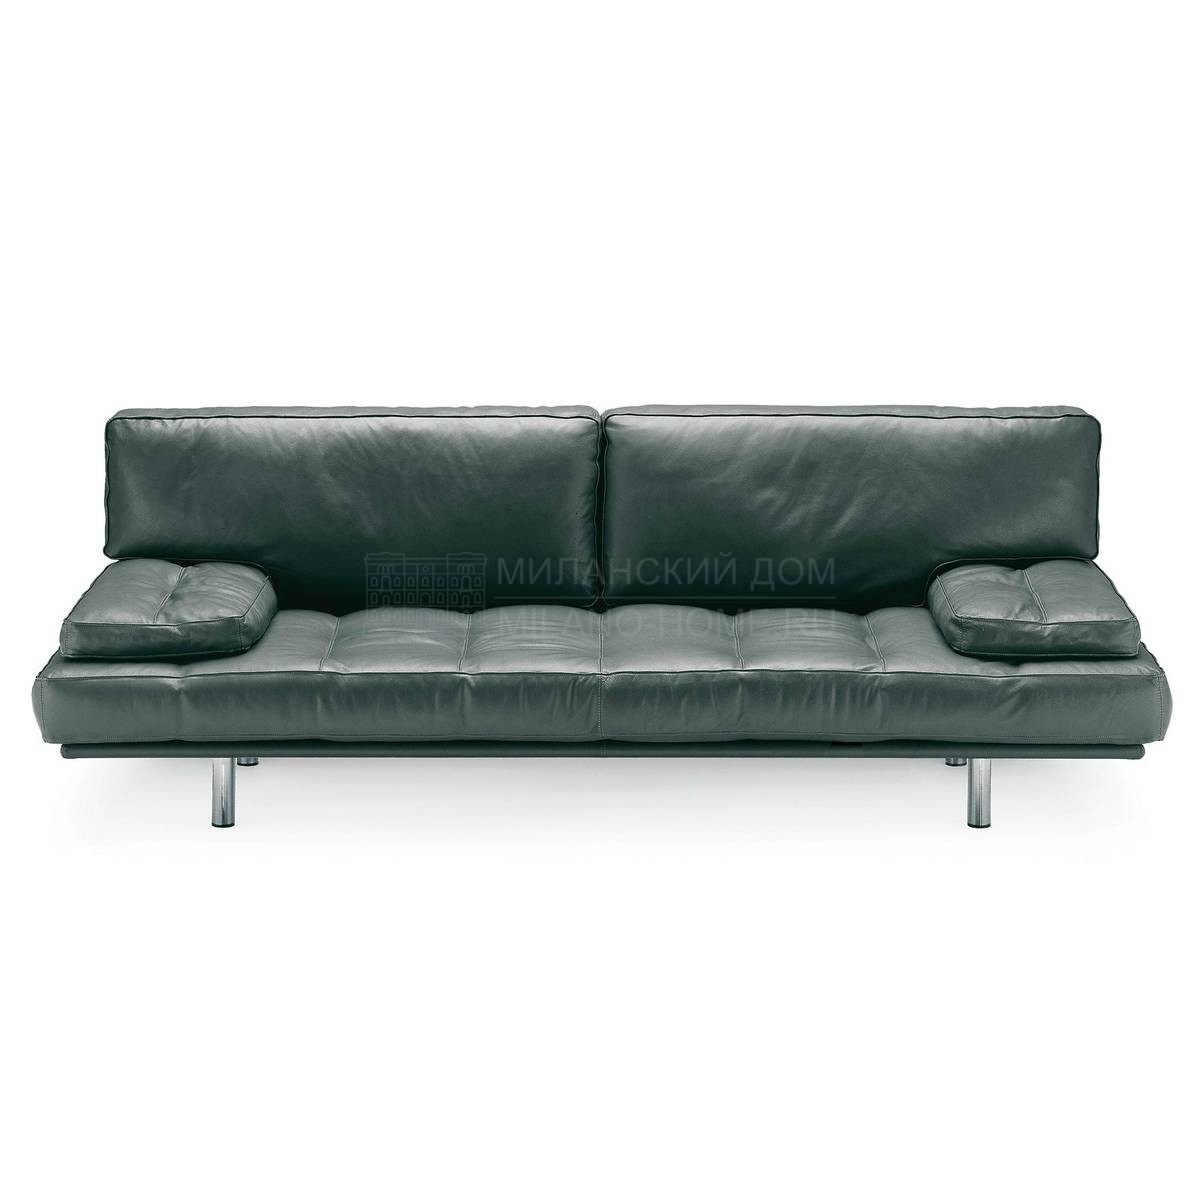 Прямой диван Milano sofa leather из Италии фабрики ZANOTTA